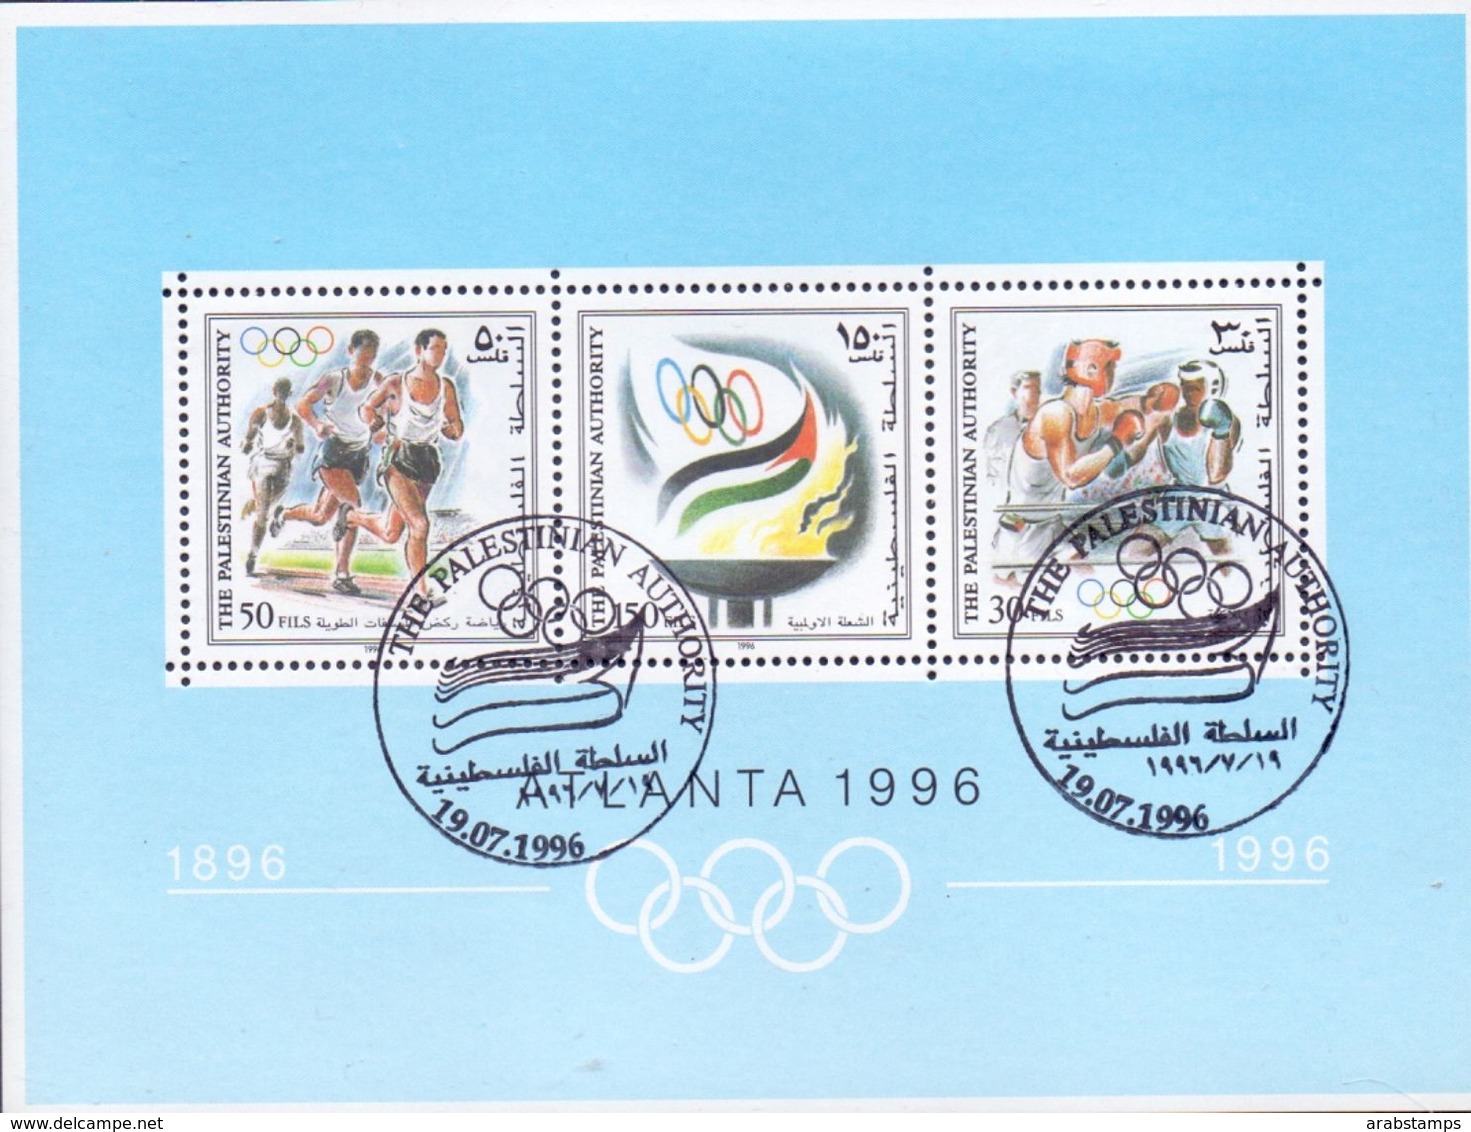 1996 Palestinian Olympics Games Atlanta Souvenir Sheets Special Stamp MNH - Palästina